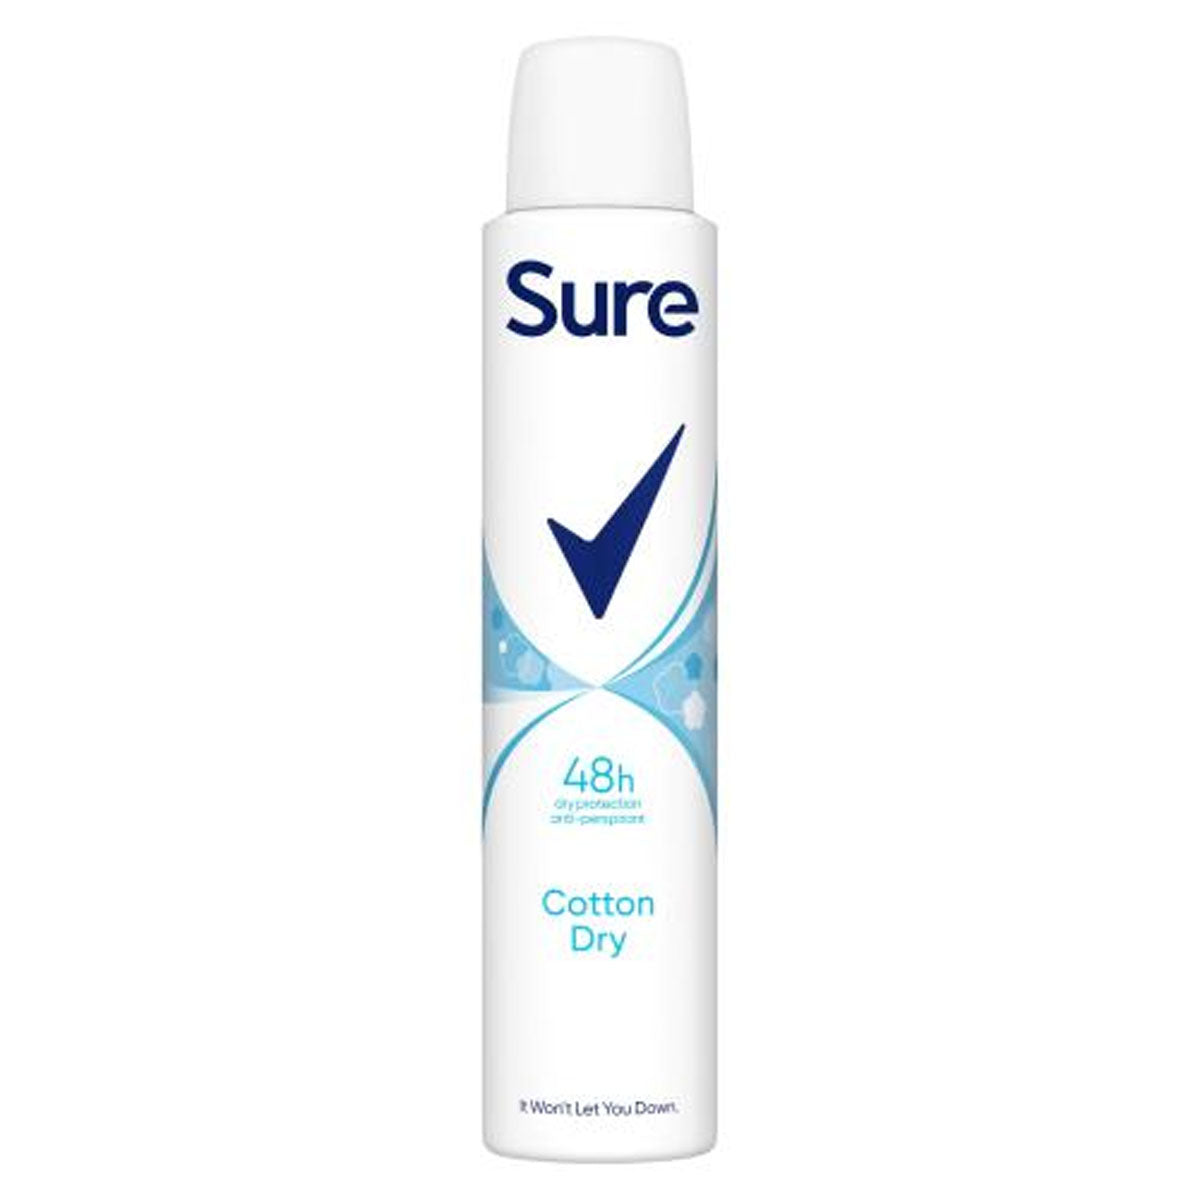 Sure - Anti-Perspirant Aerosol Cotton Dry - 200ml deodorant.